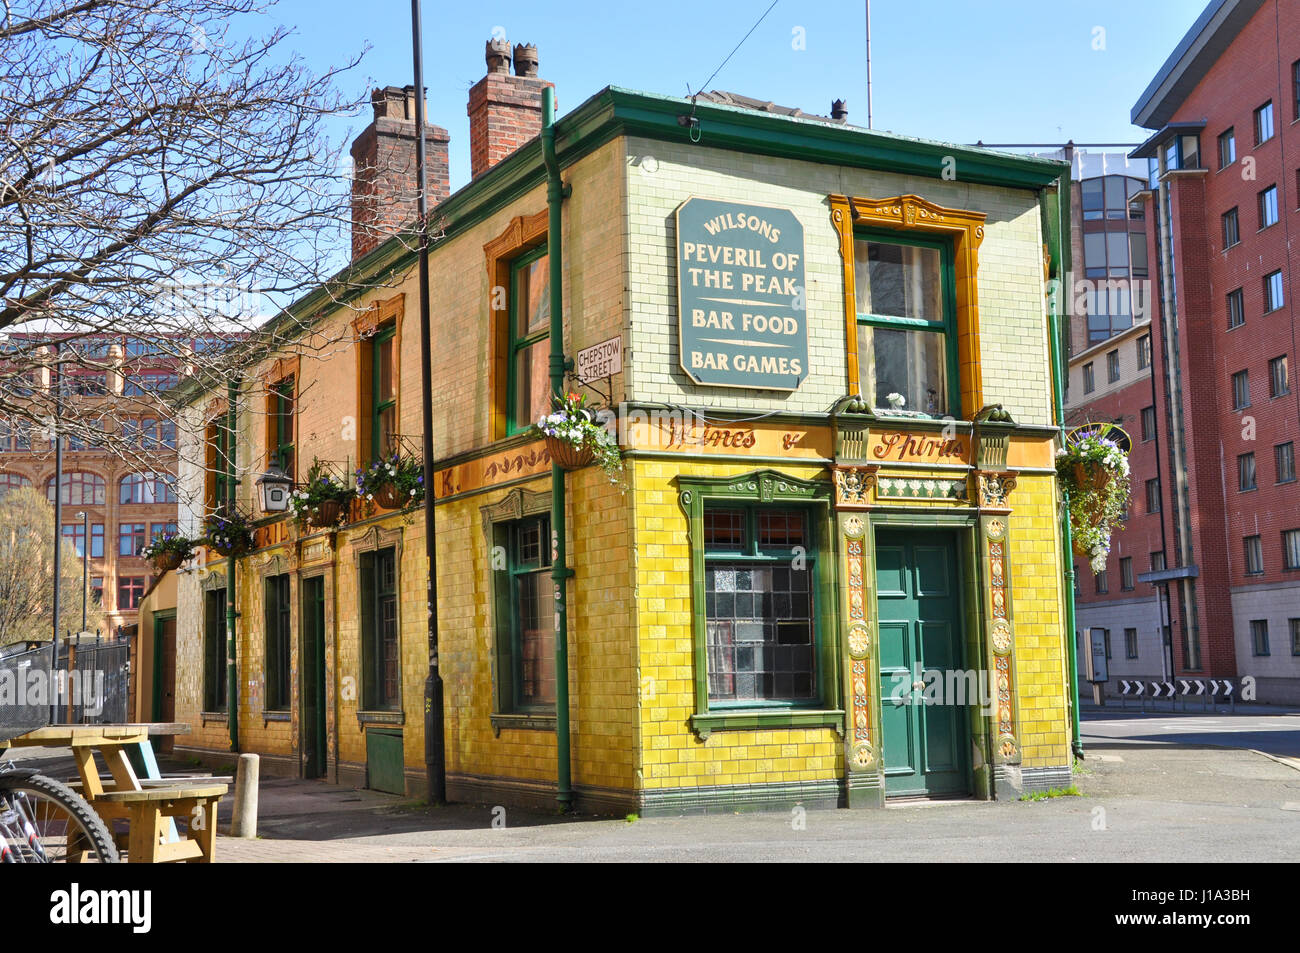 Peveril of the Peak pub, pub historique célèbre, Manchester, UK Banque D'Images